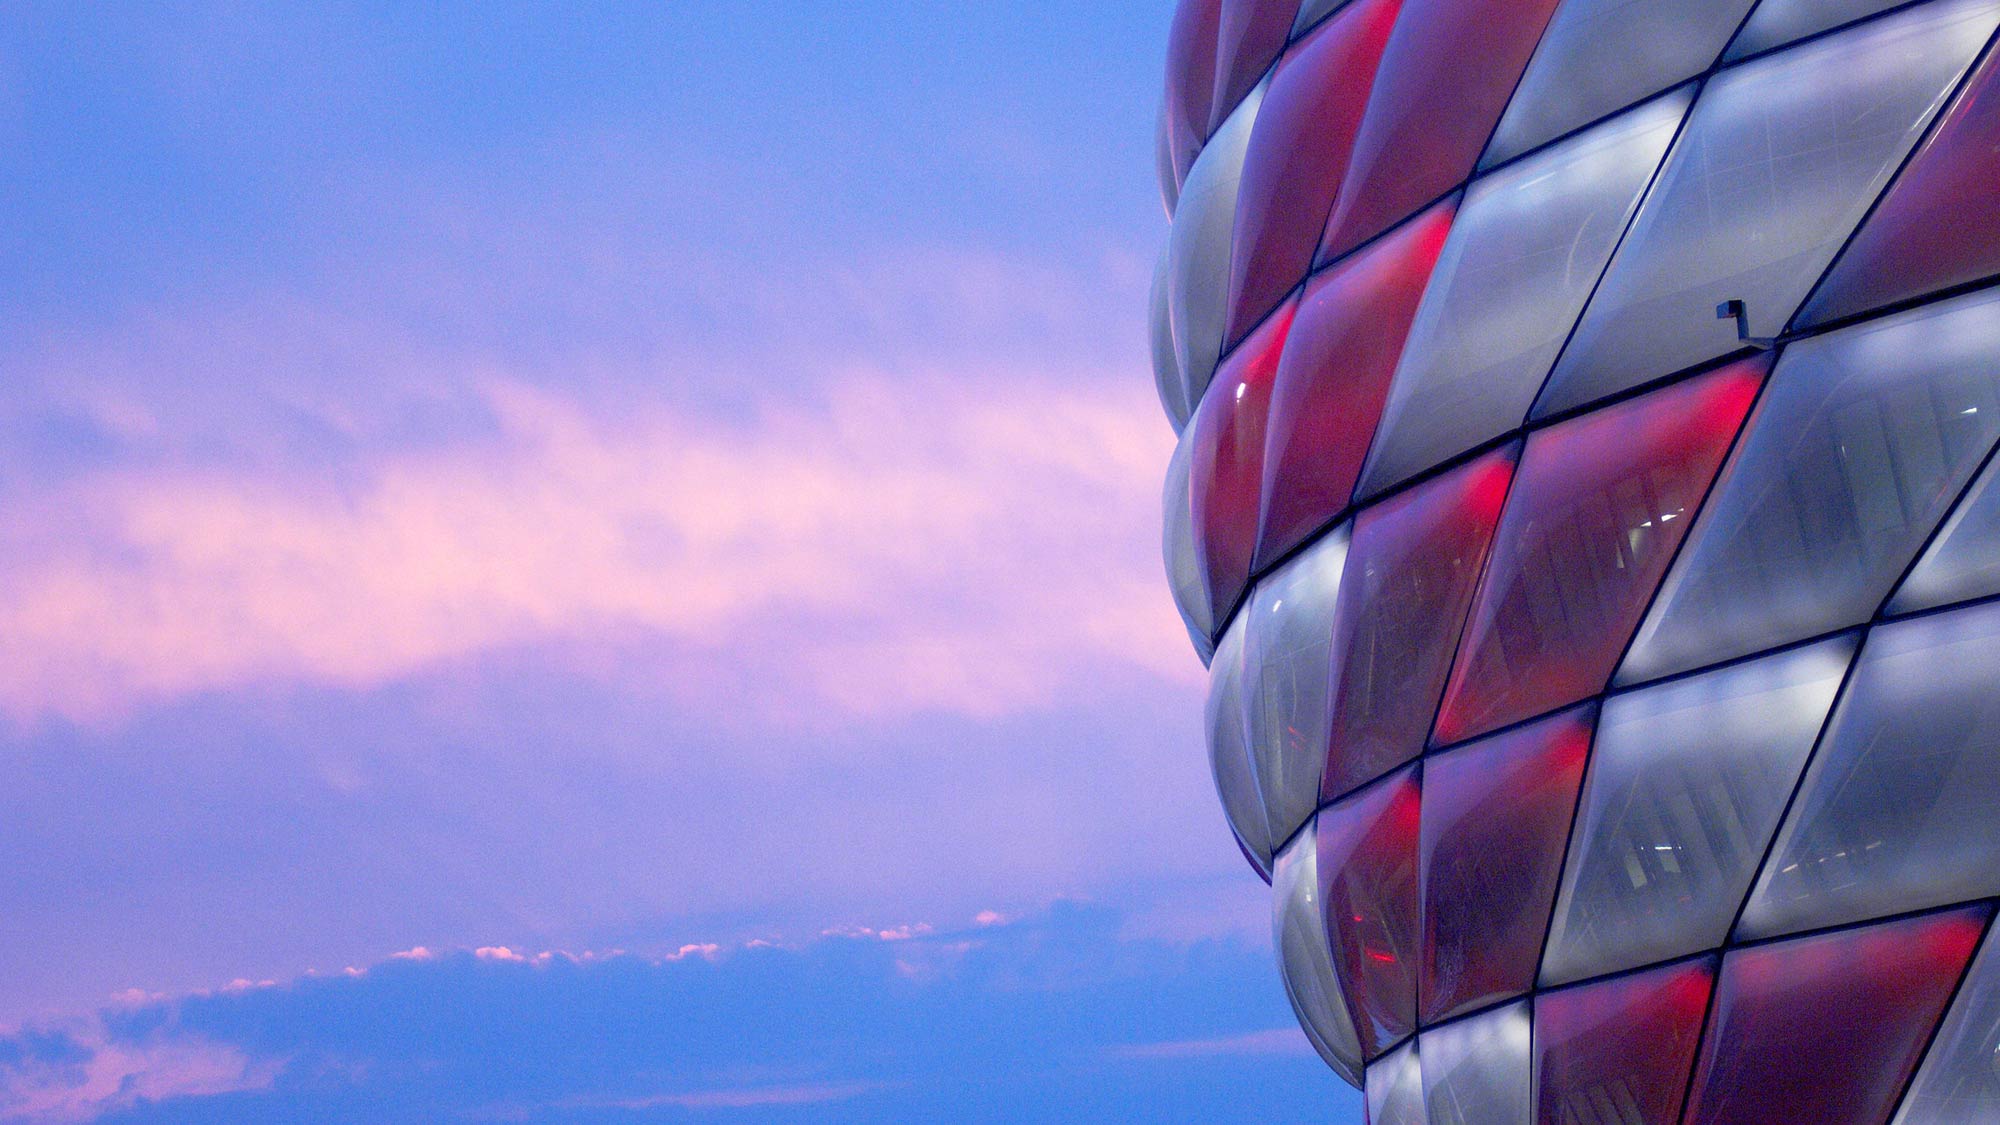 Facade of the Allianz Arena